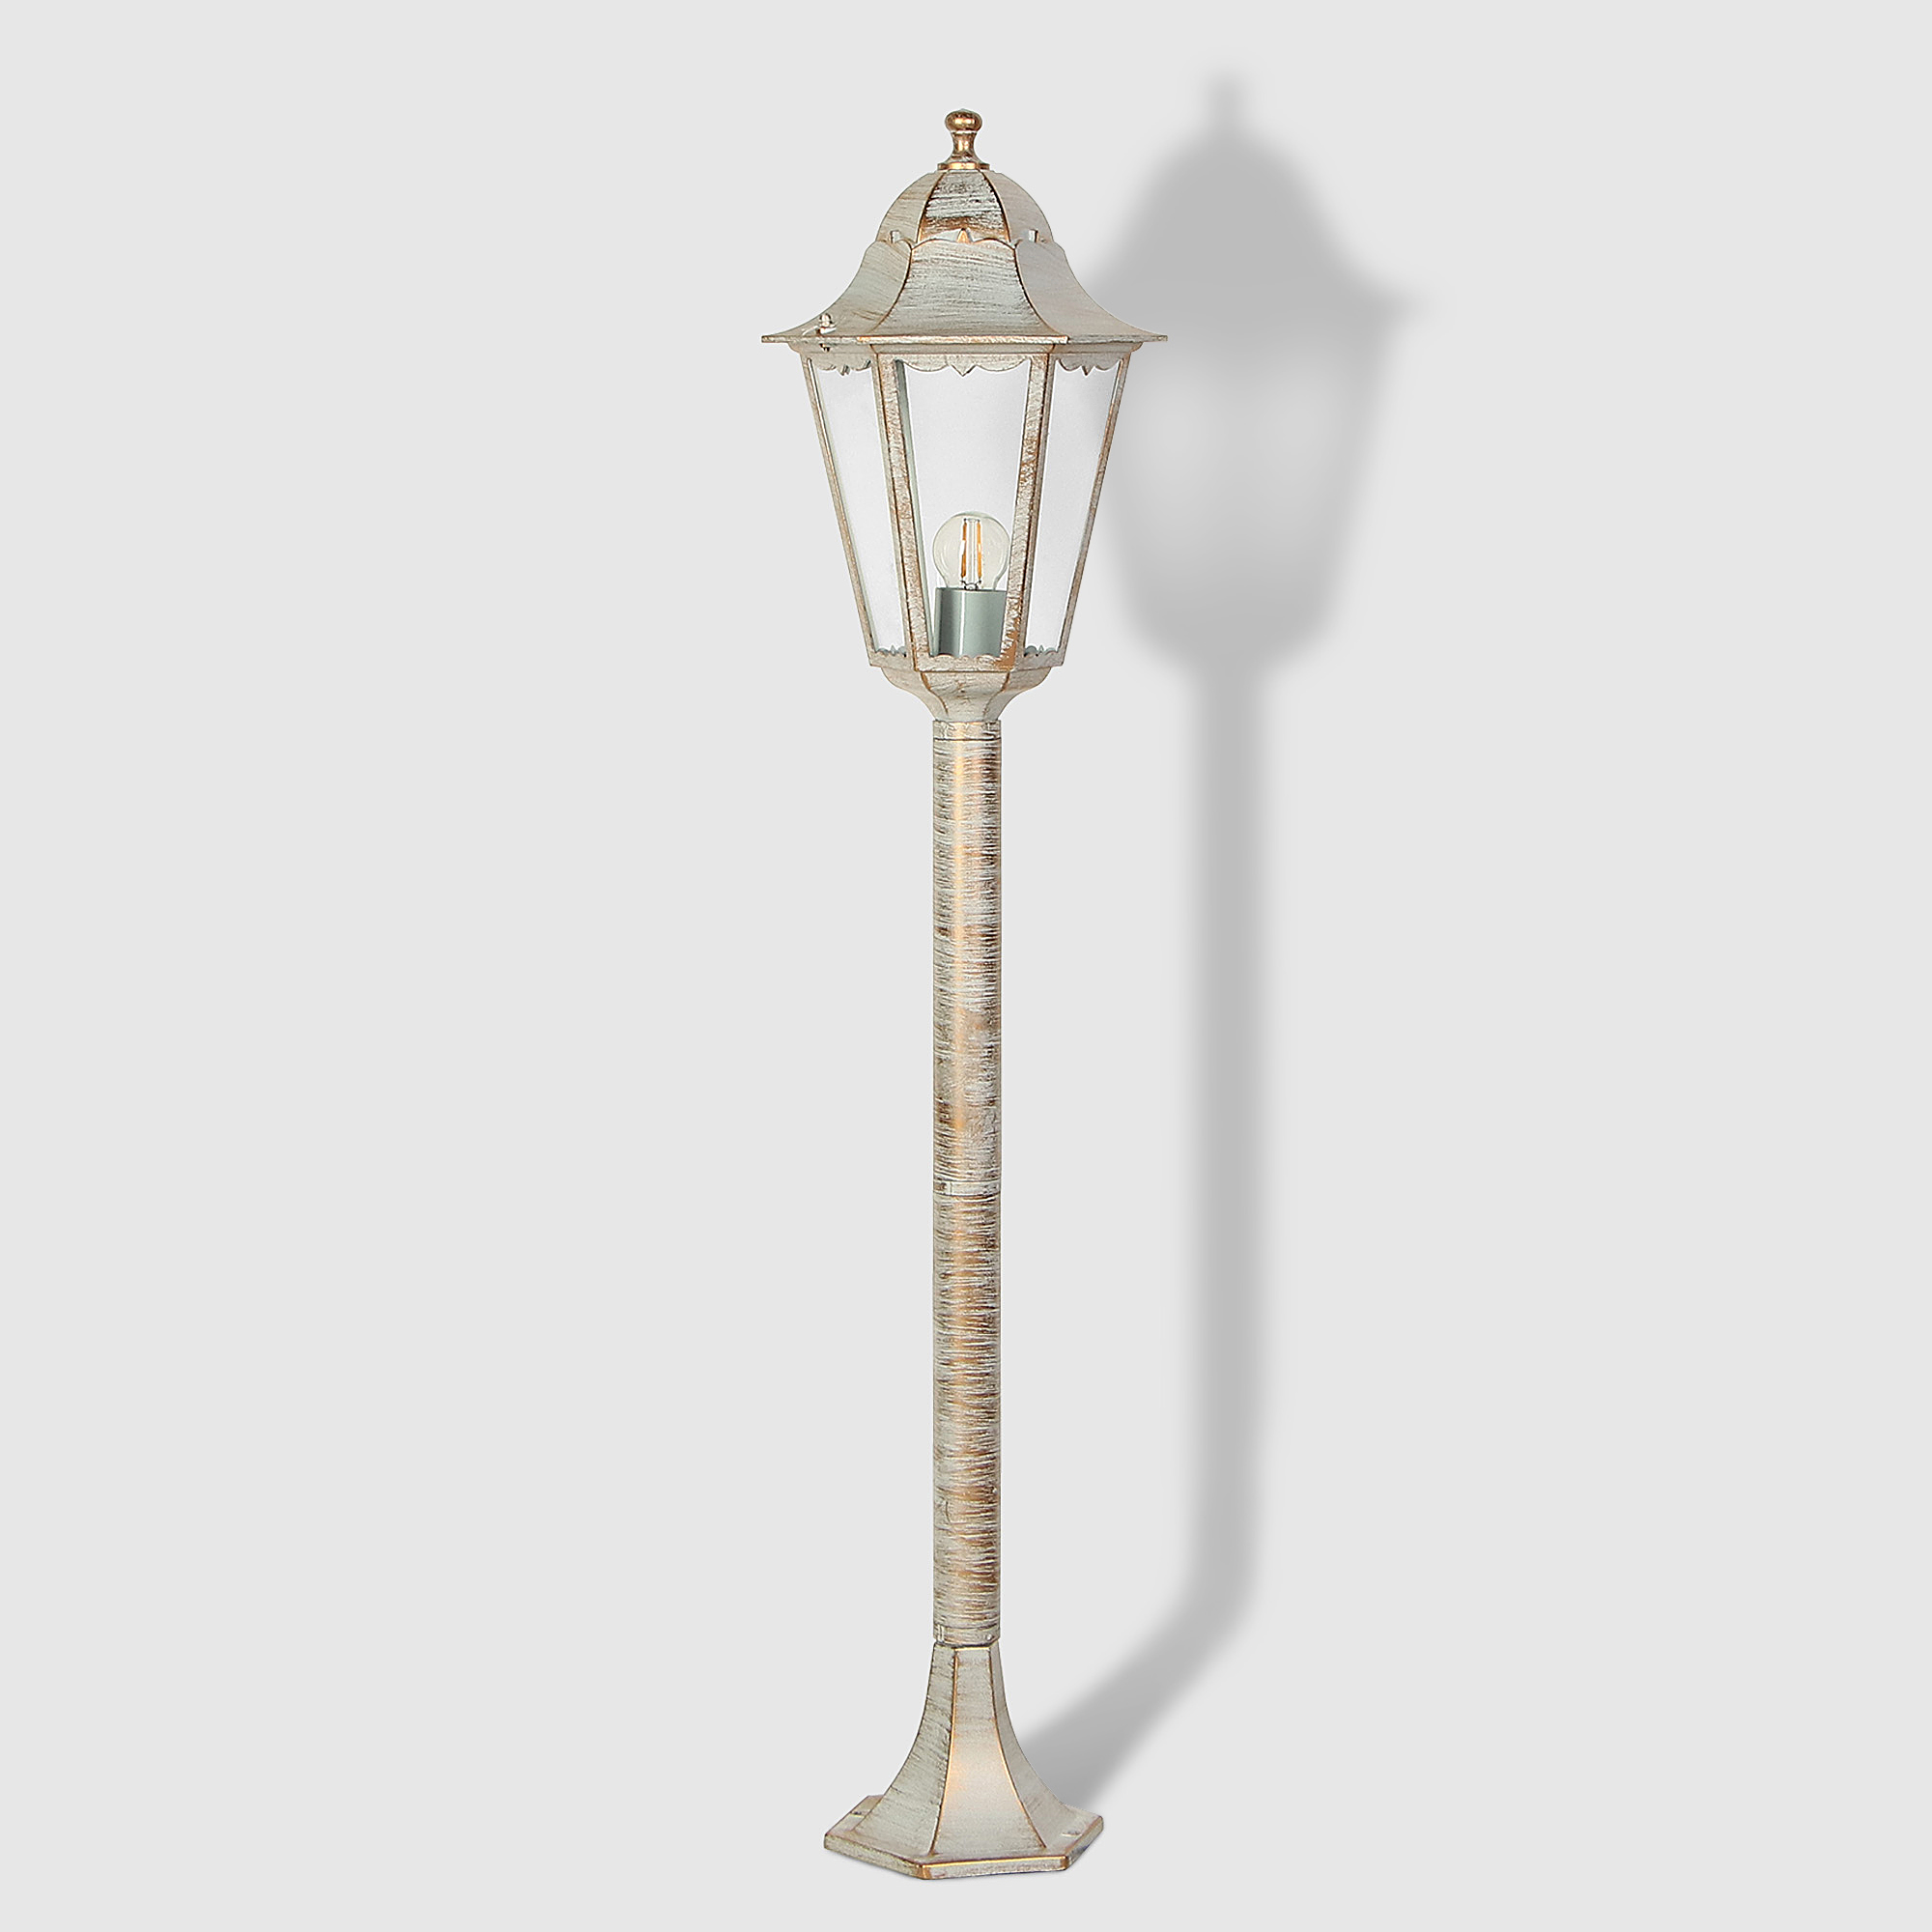 Светильник садовый Amber Lamp 8007LA напольный IP44 E27 100Вт, белое золото, цвет белое золото, прозрачный - фото 1